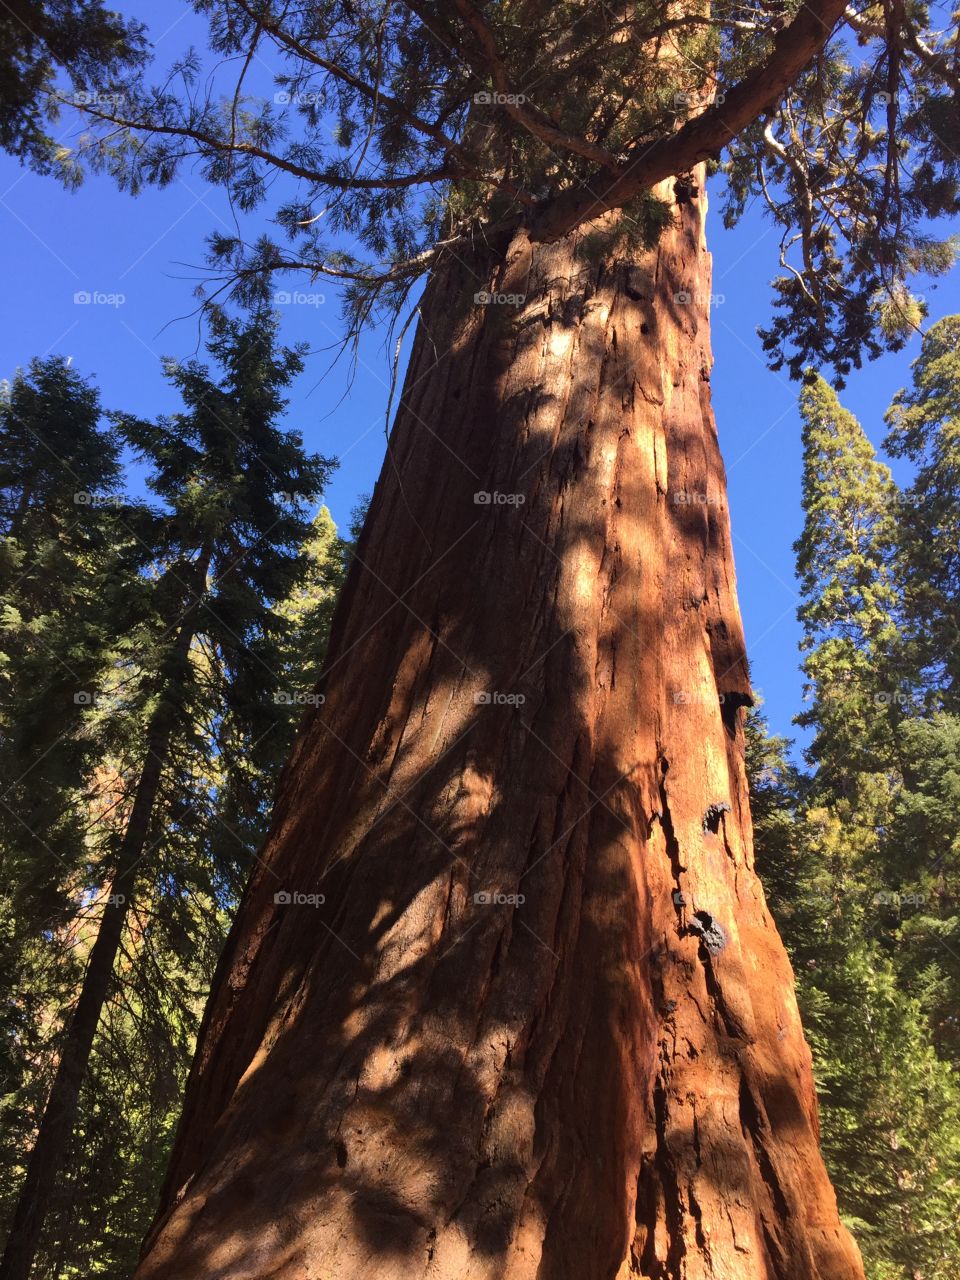 Visiting the sequoias in CA 